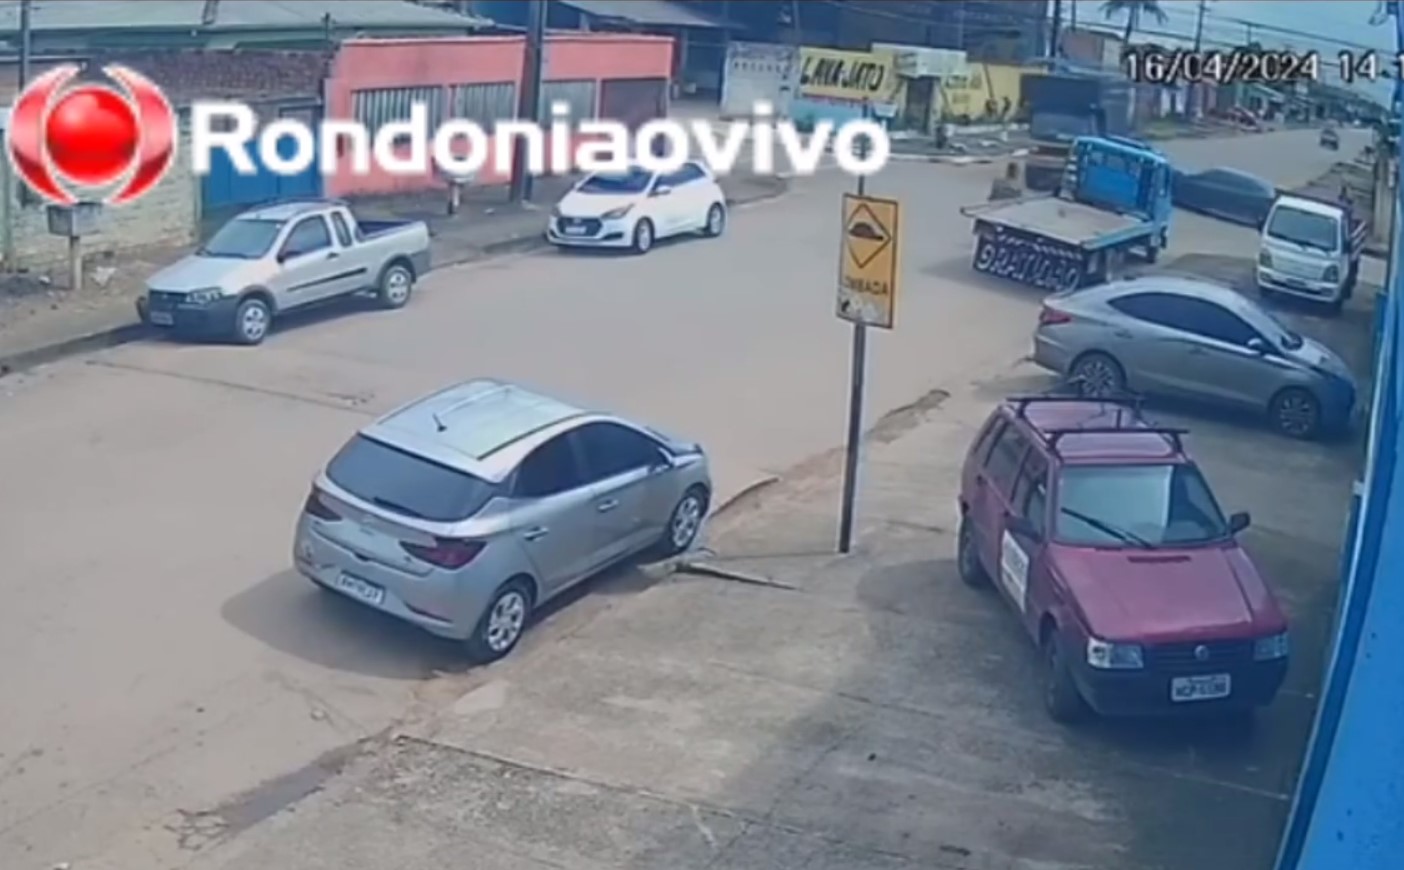 VÍDEO: Motorista de Vectra invade preferencial e atinge em cheio caminhão de som